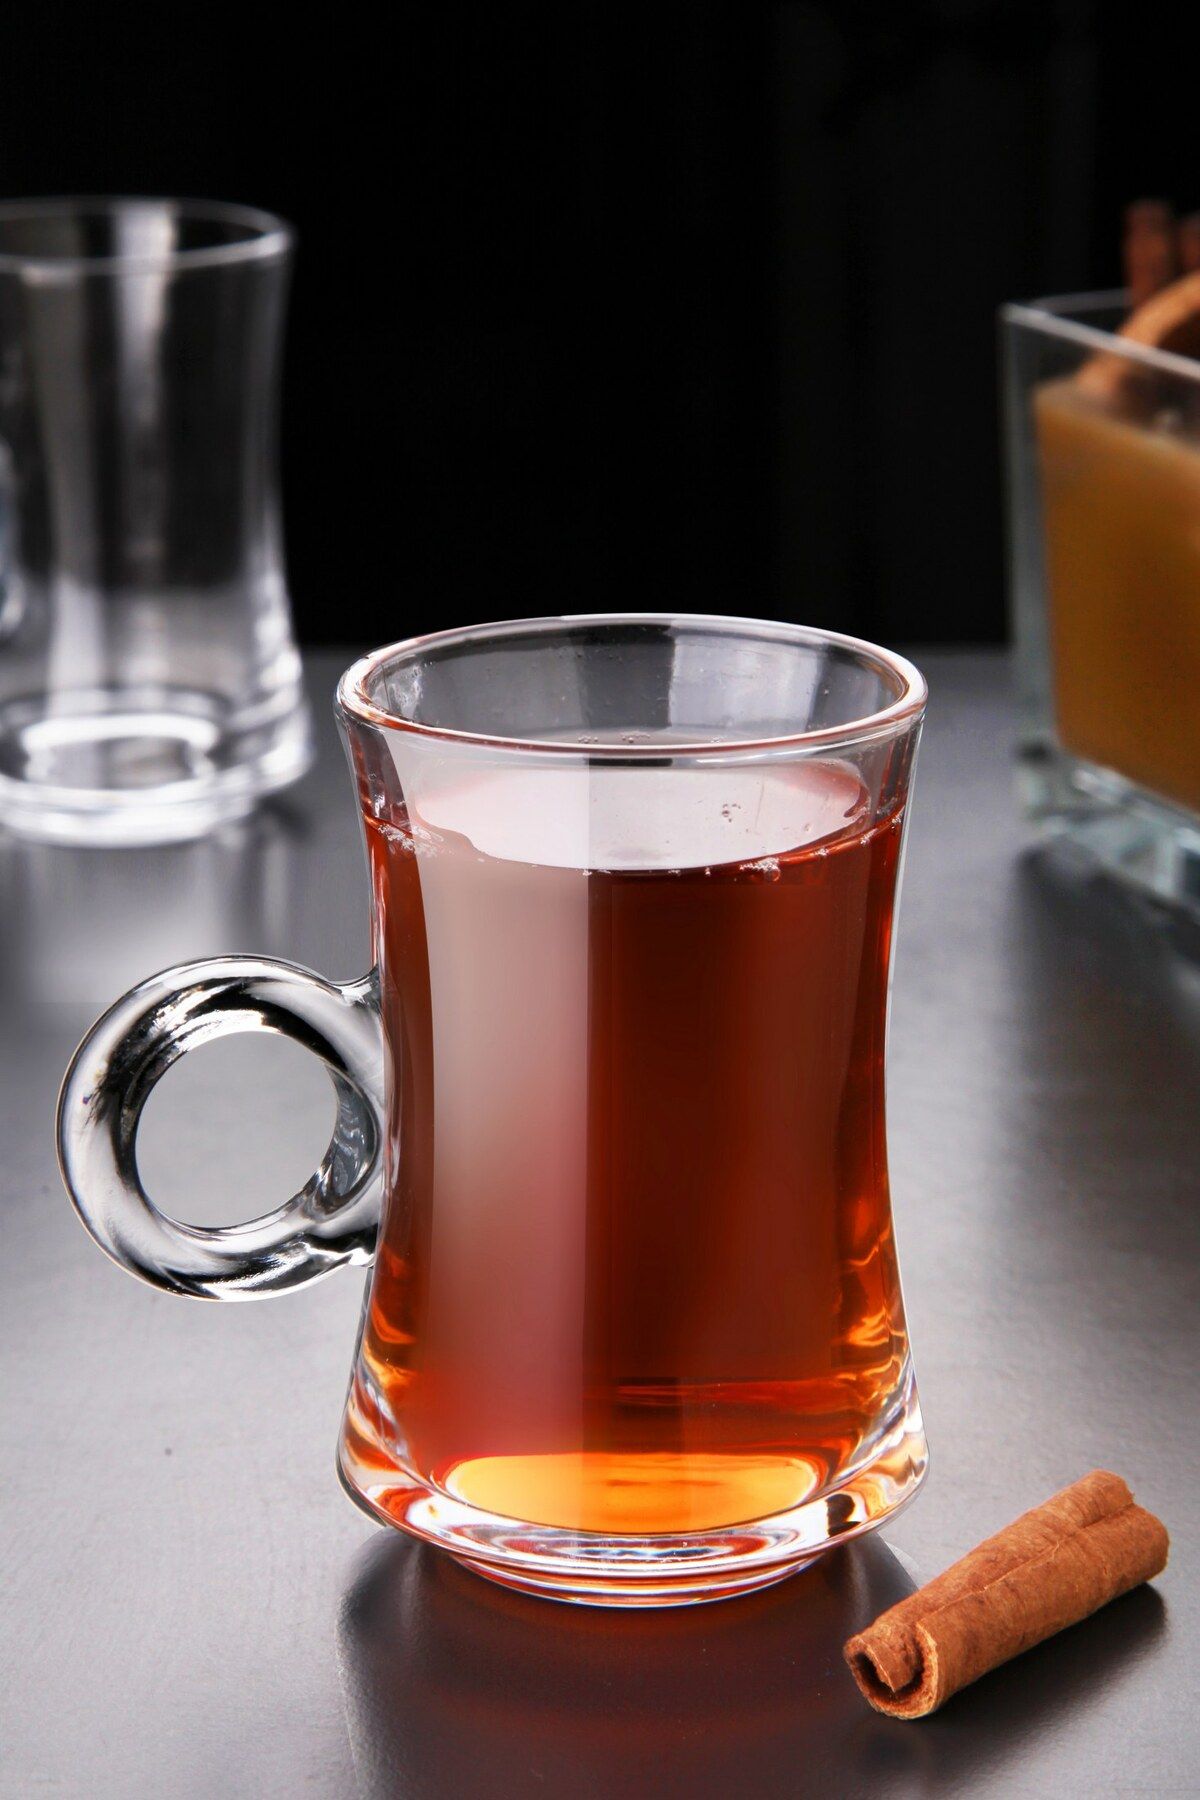 Kitchen Life 6'lı Kulplu Sade Desenli Çay Bardak Seti - Bardak Takımı 170 ml